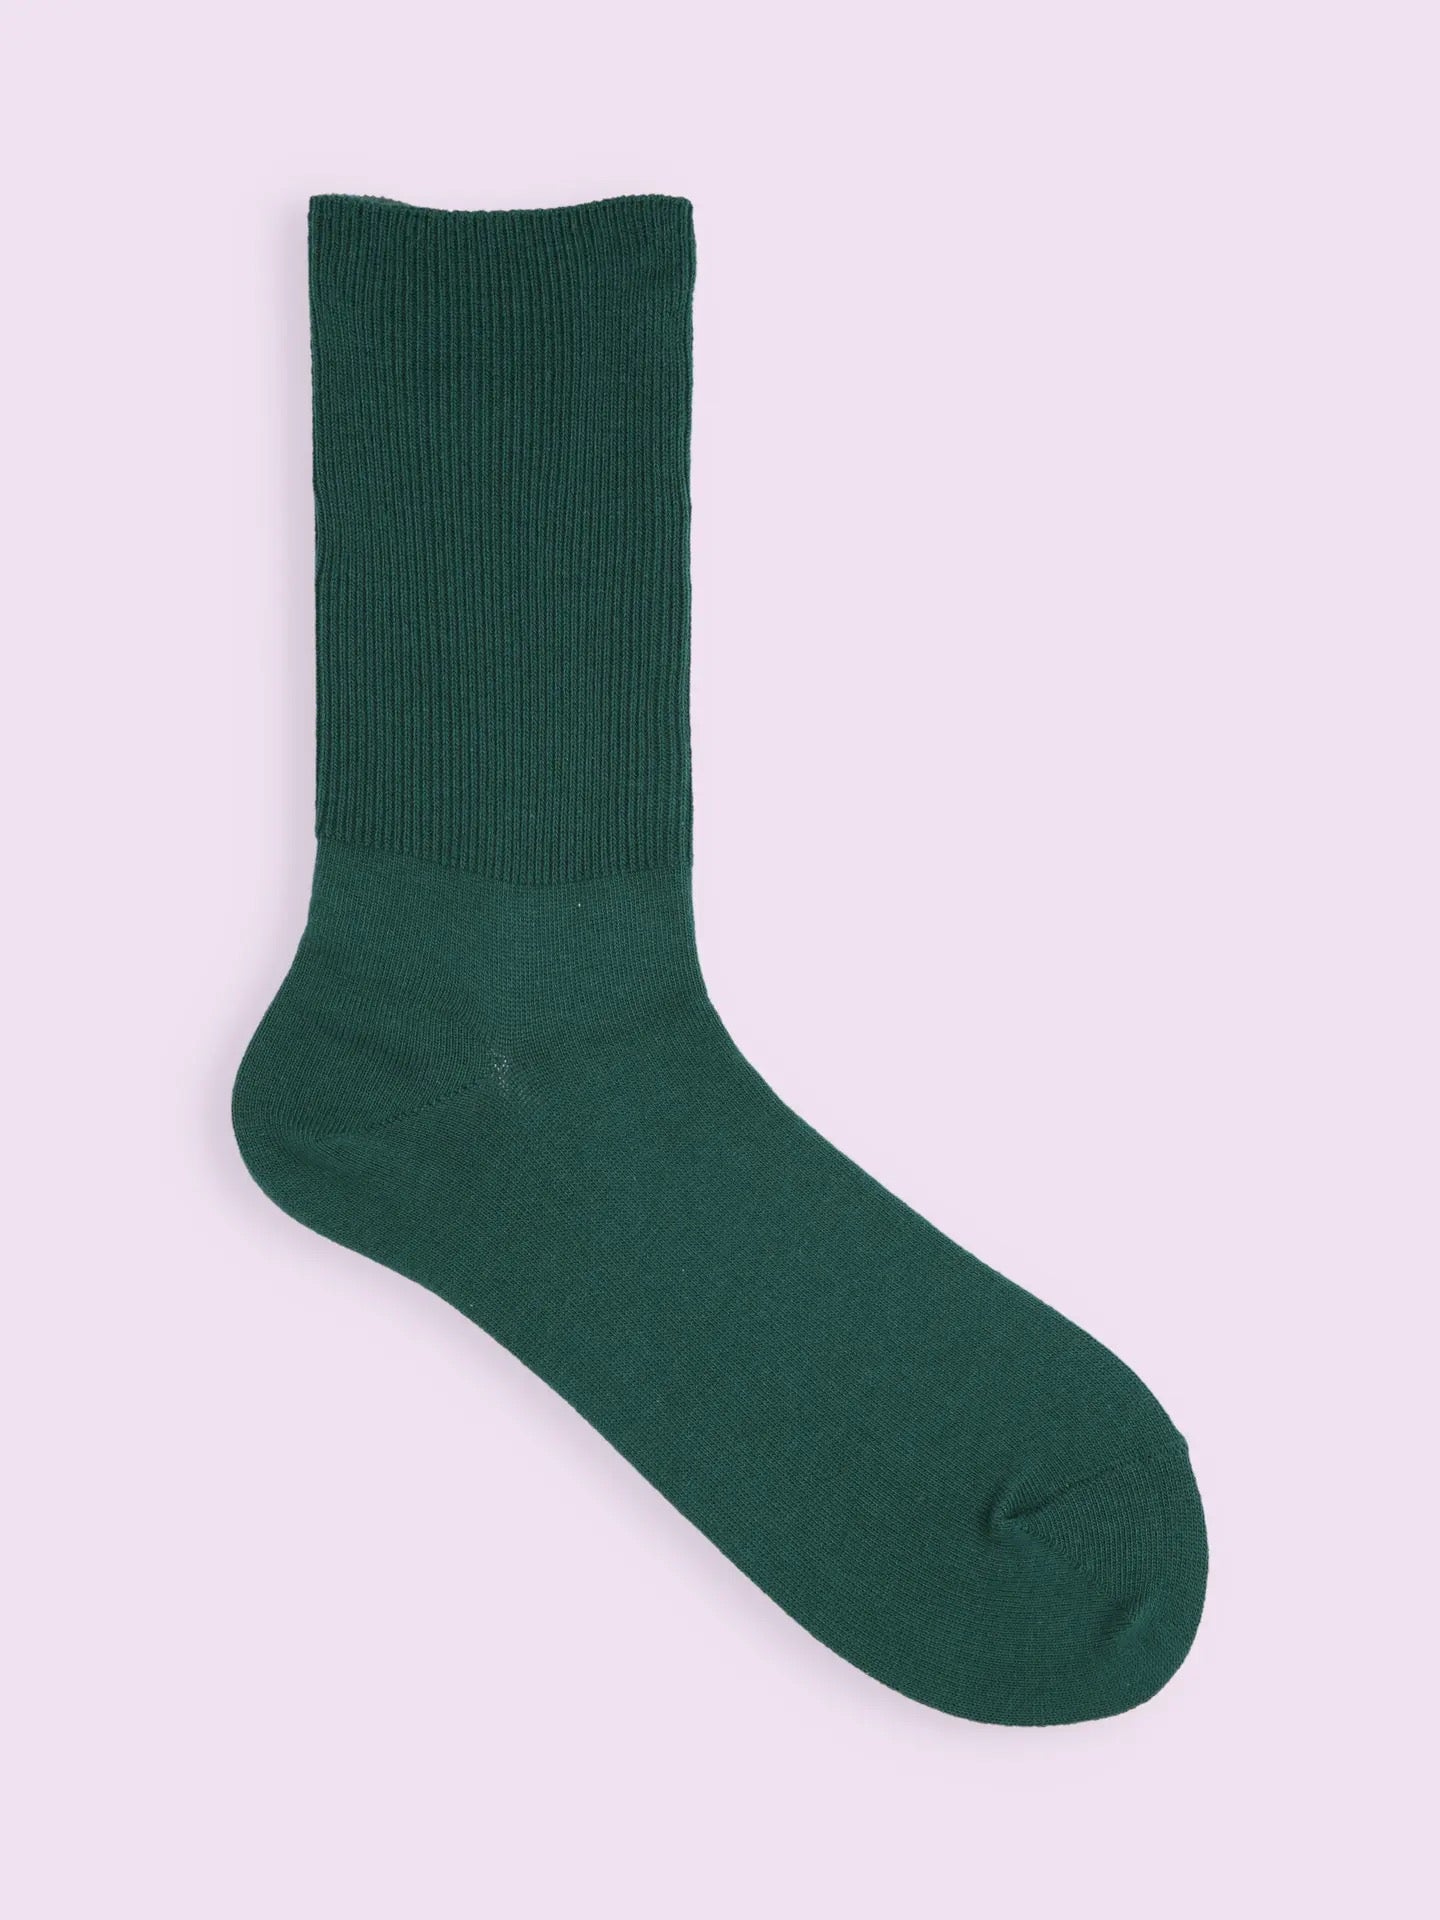 靴下屋Tabio宽松舒适纯色罗纹短筒袜堆堆袜 13色选